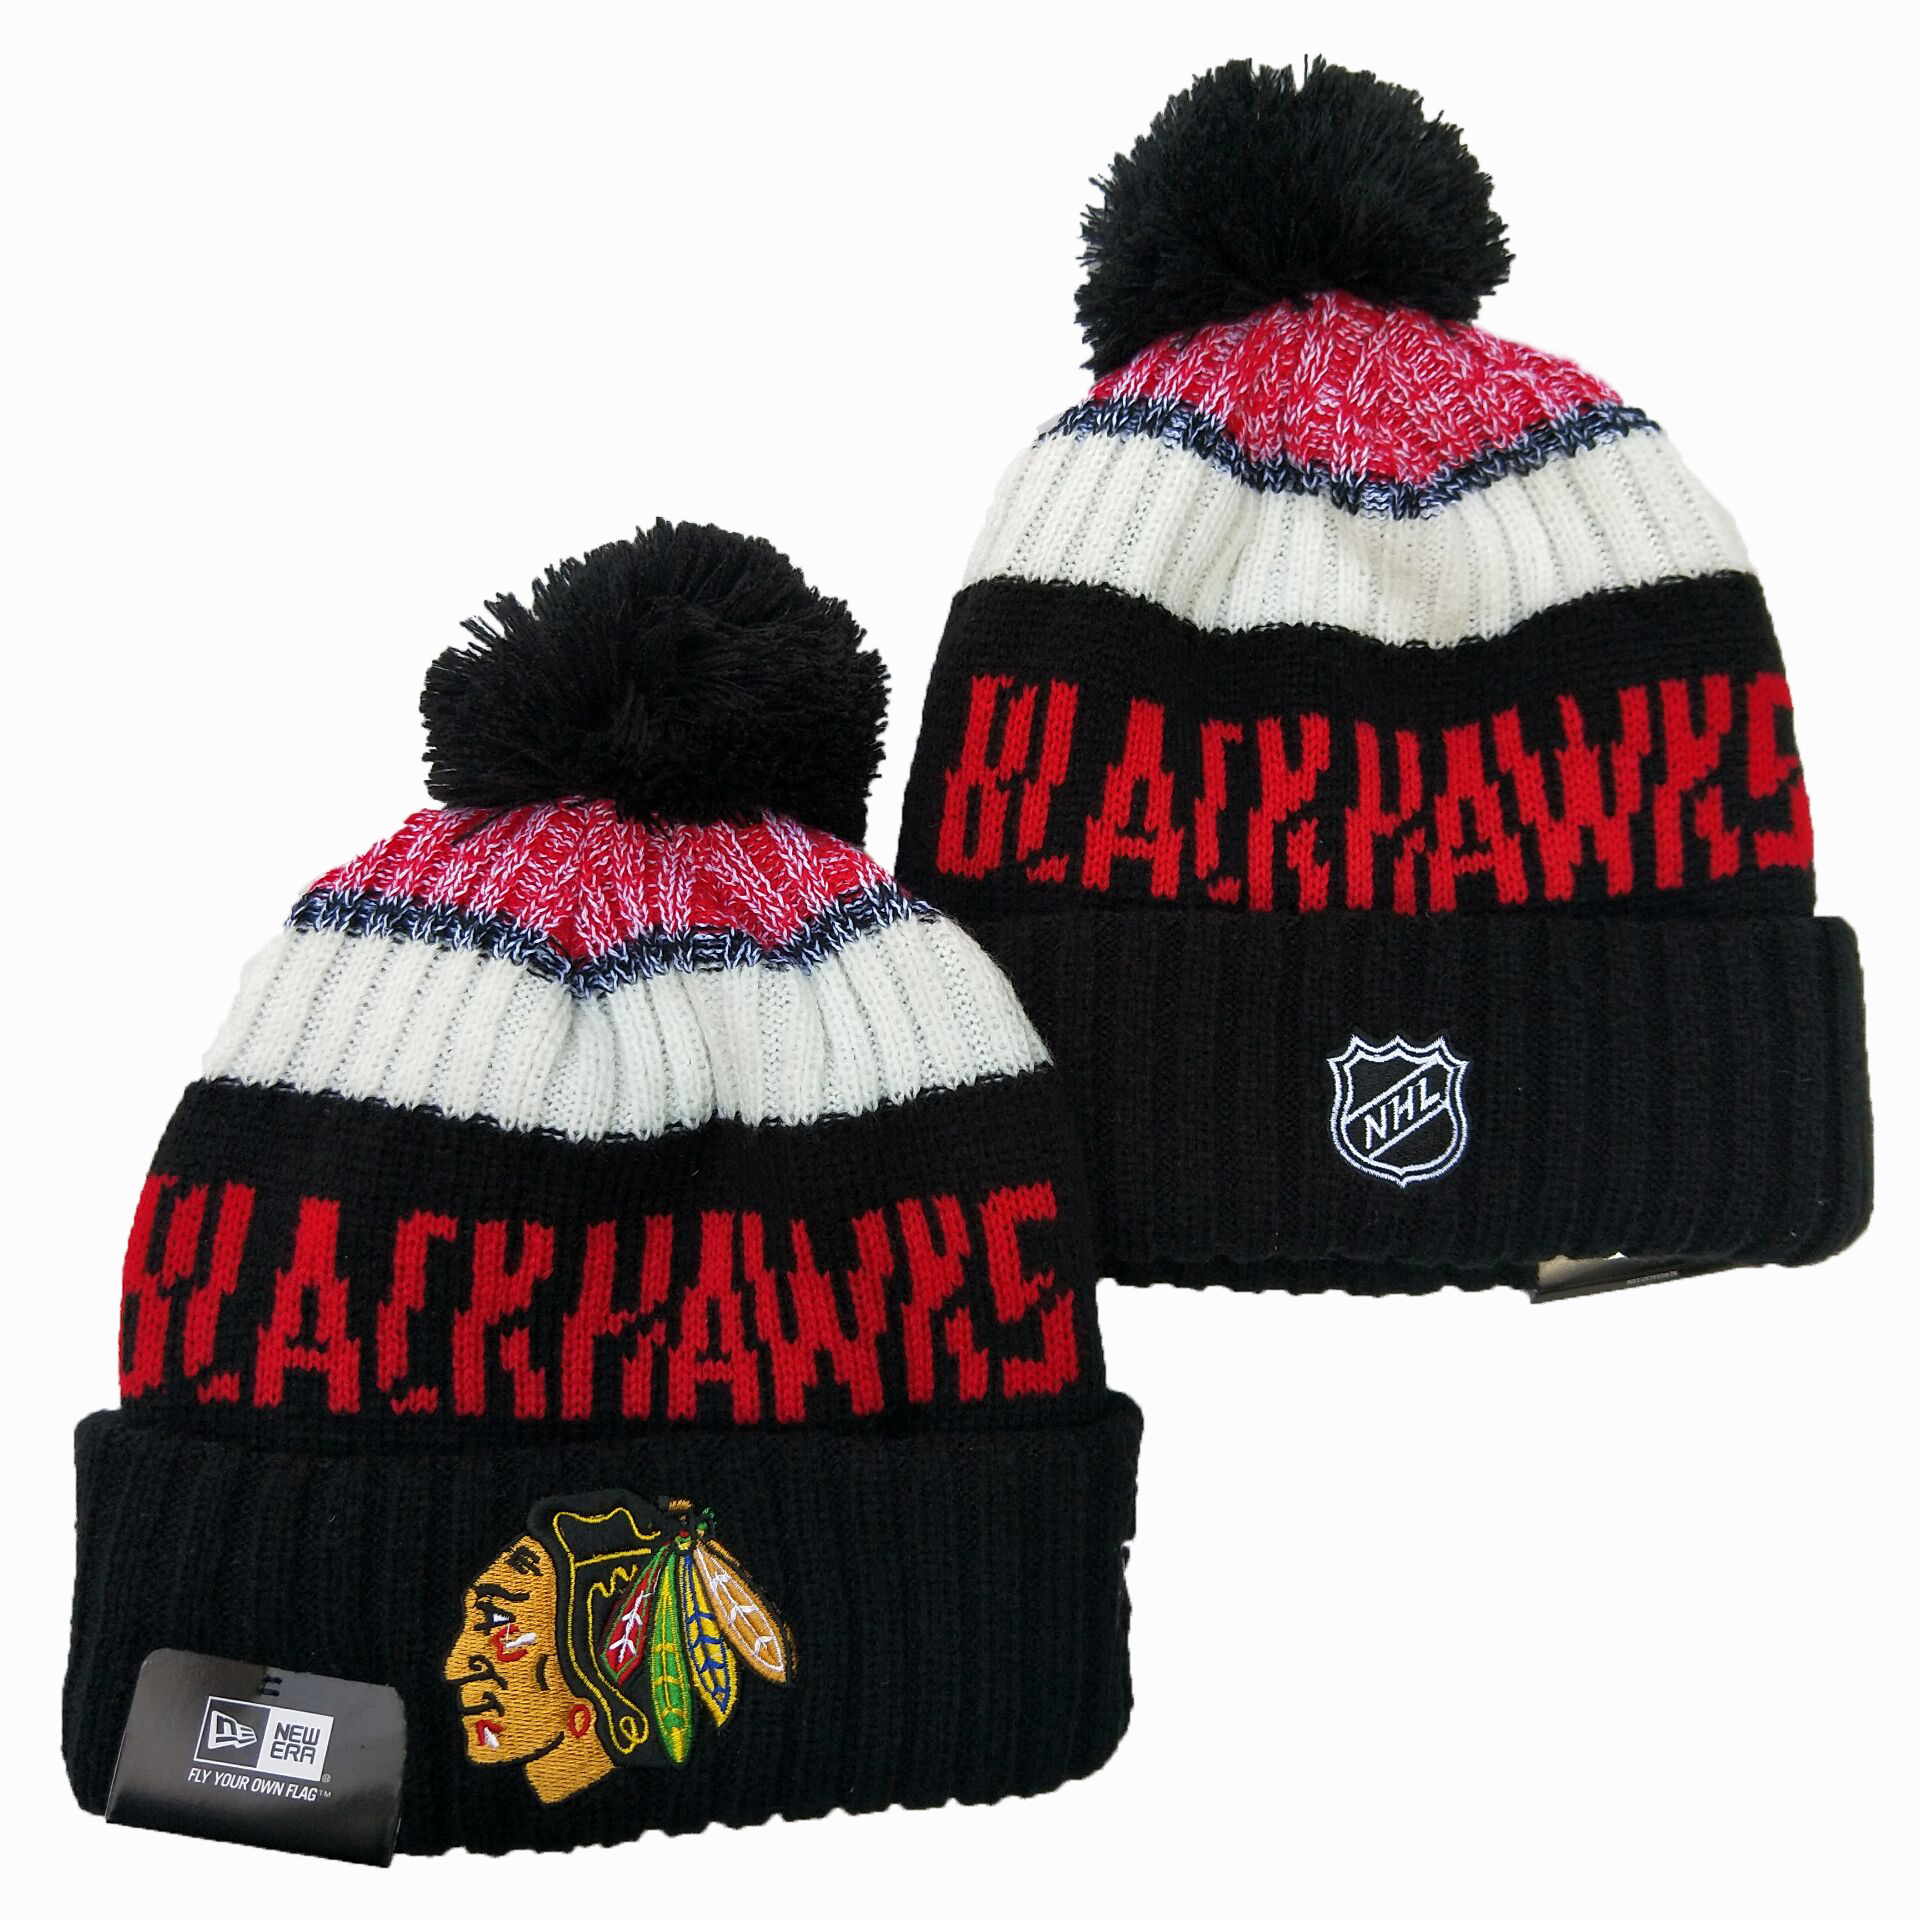 Blackhawks Team Logo Black Wordmark Cuffed Pom Knit Hat YD